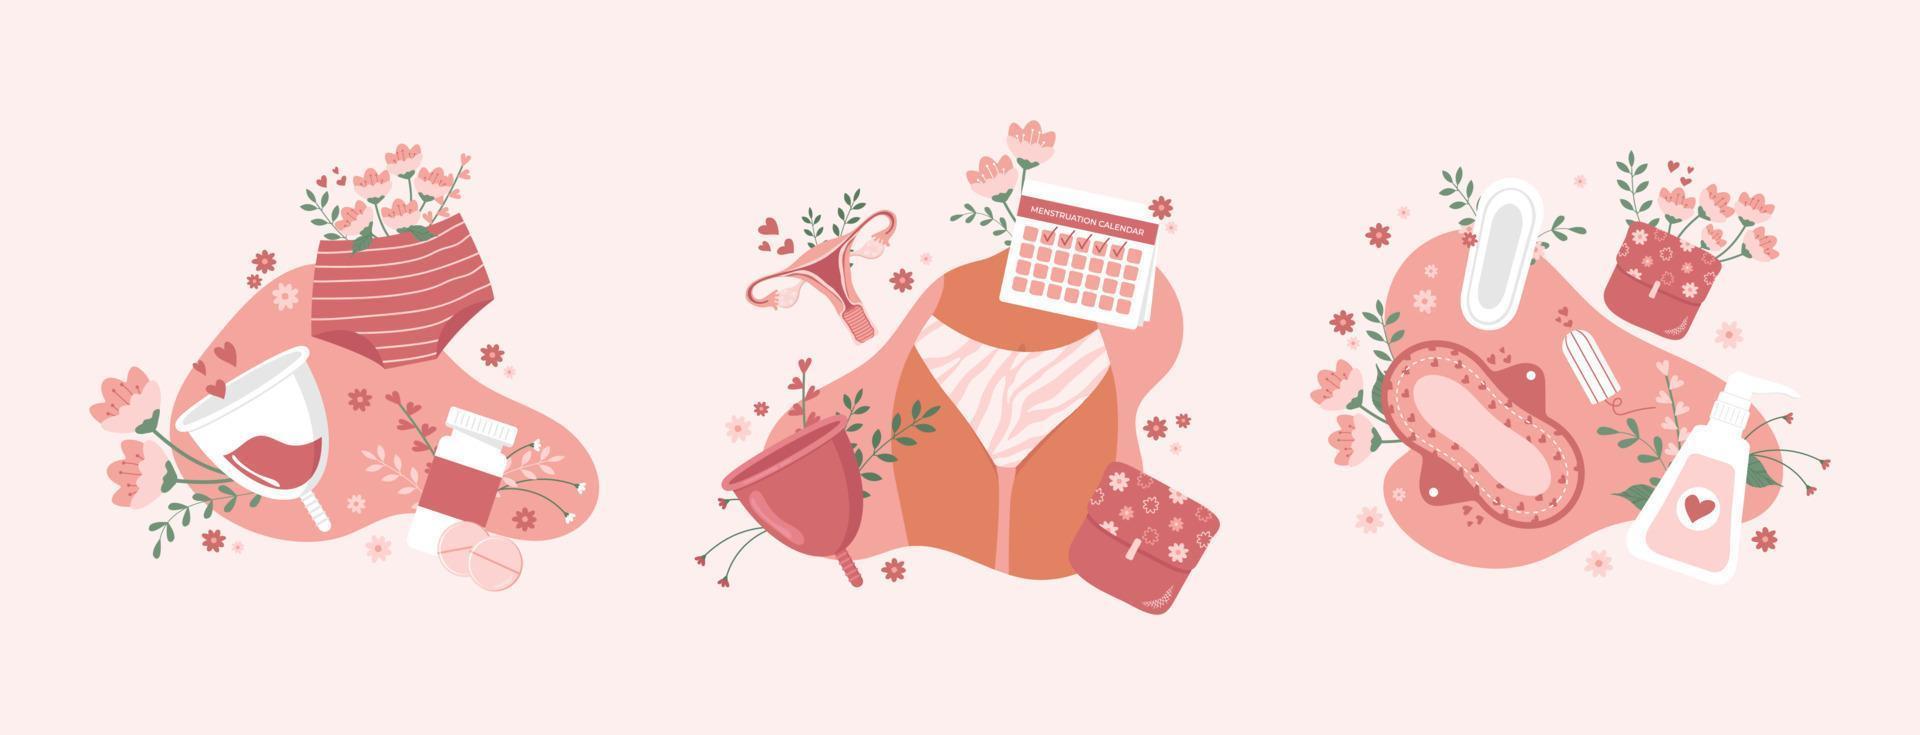 concepto de diseño menstrual plano con artículos y toallas de higiene femenina, bragas, tampones, calendario, niña, sobre fondo rosa, vector